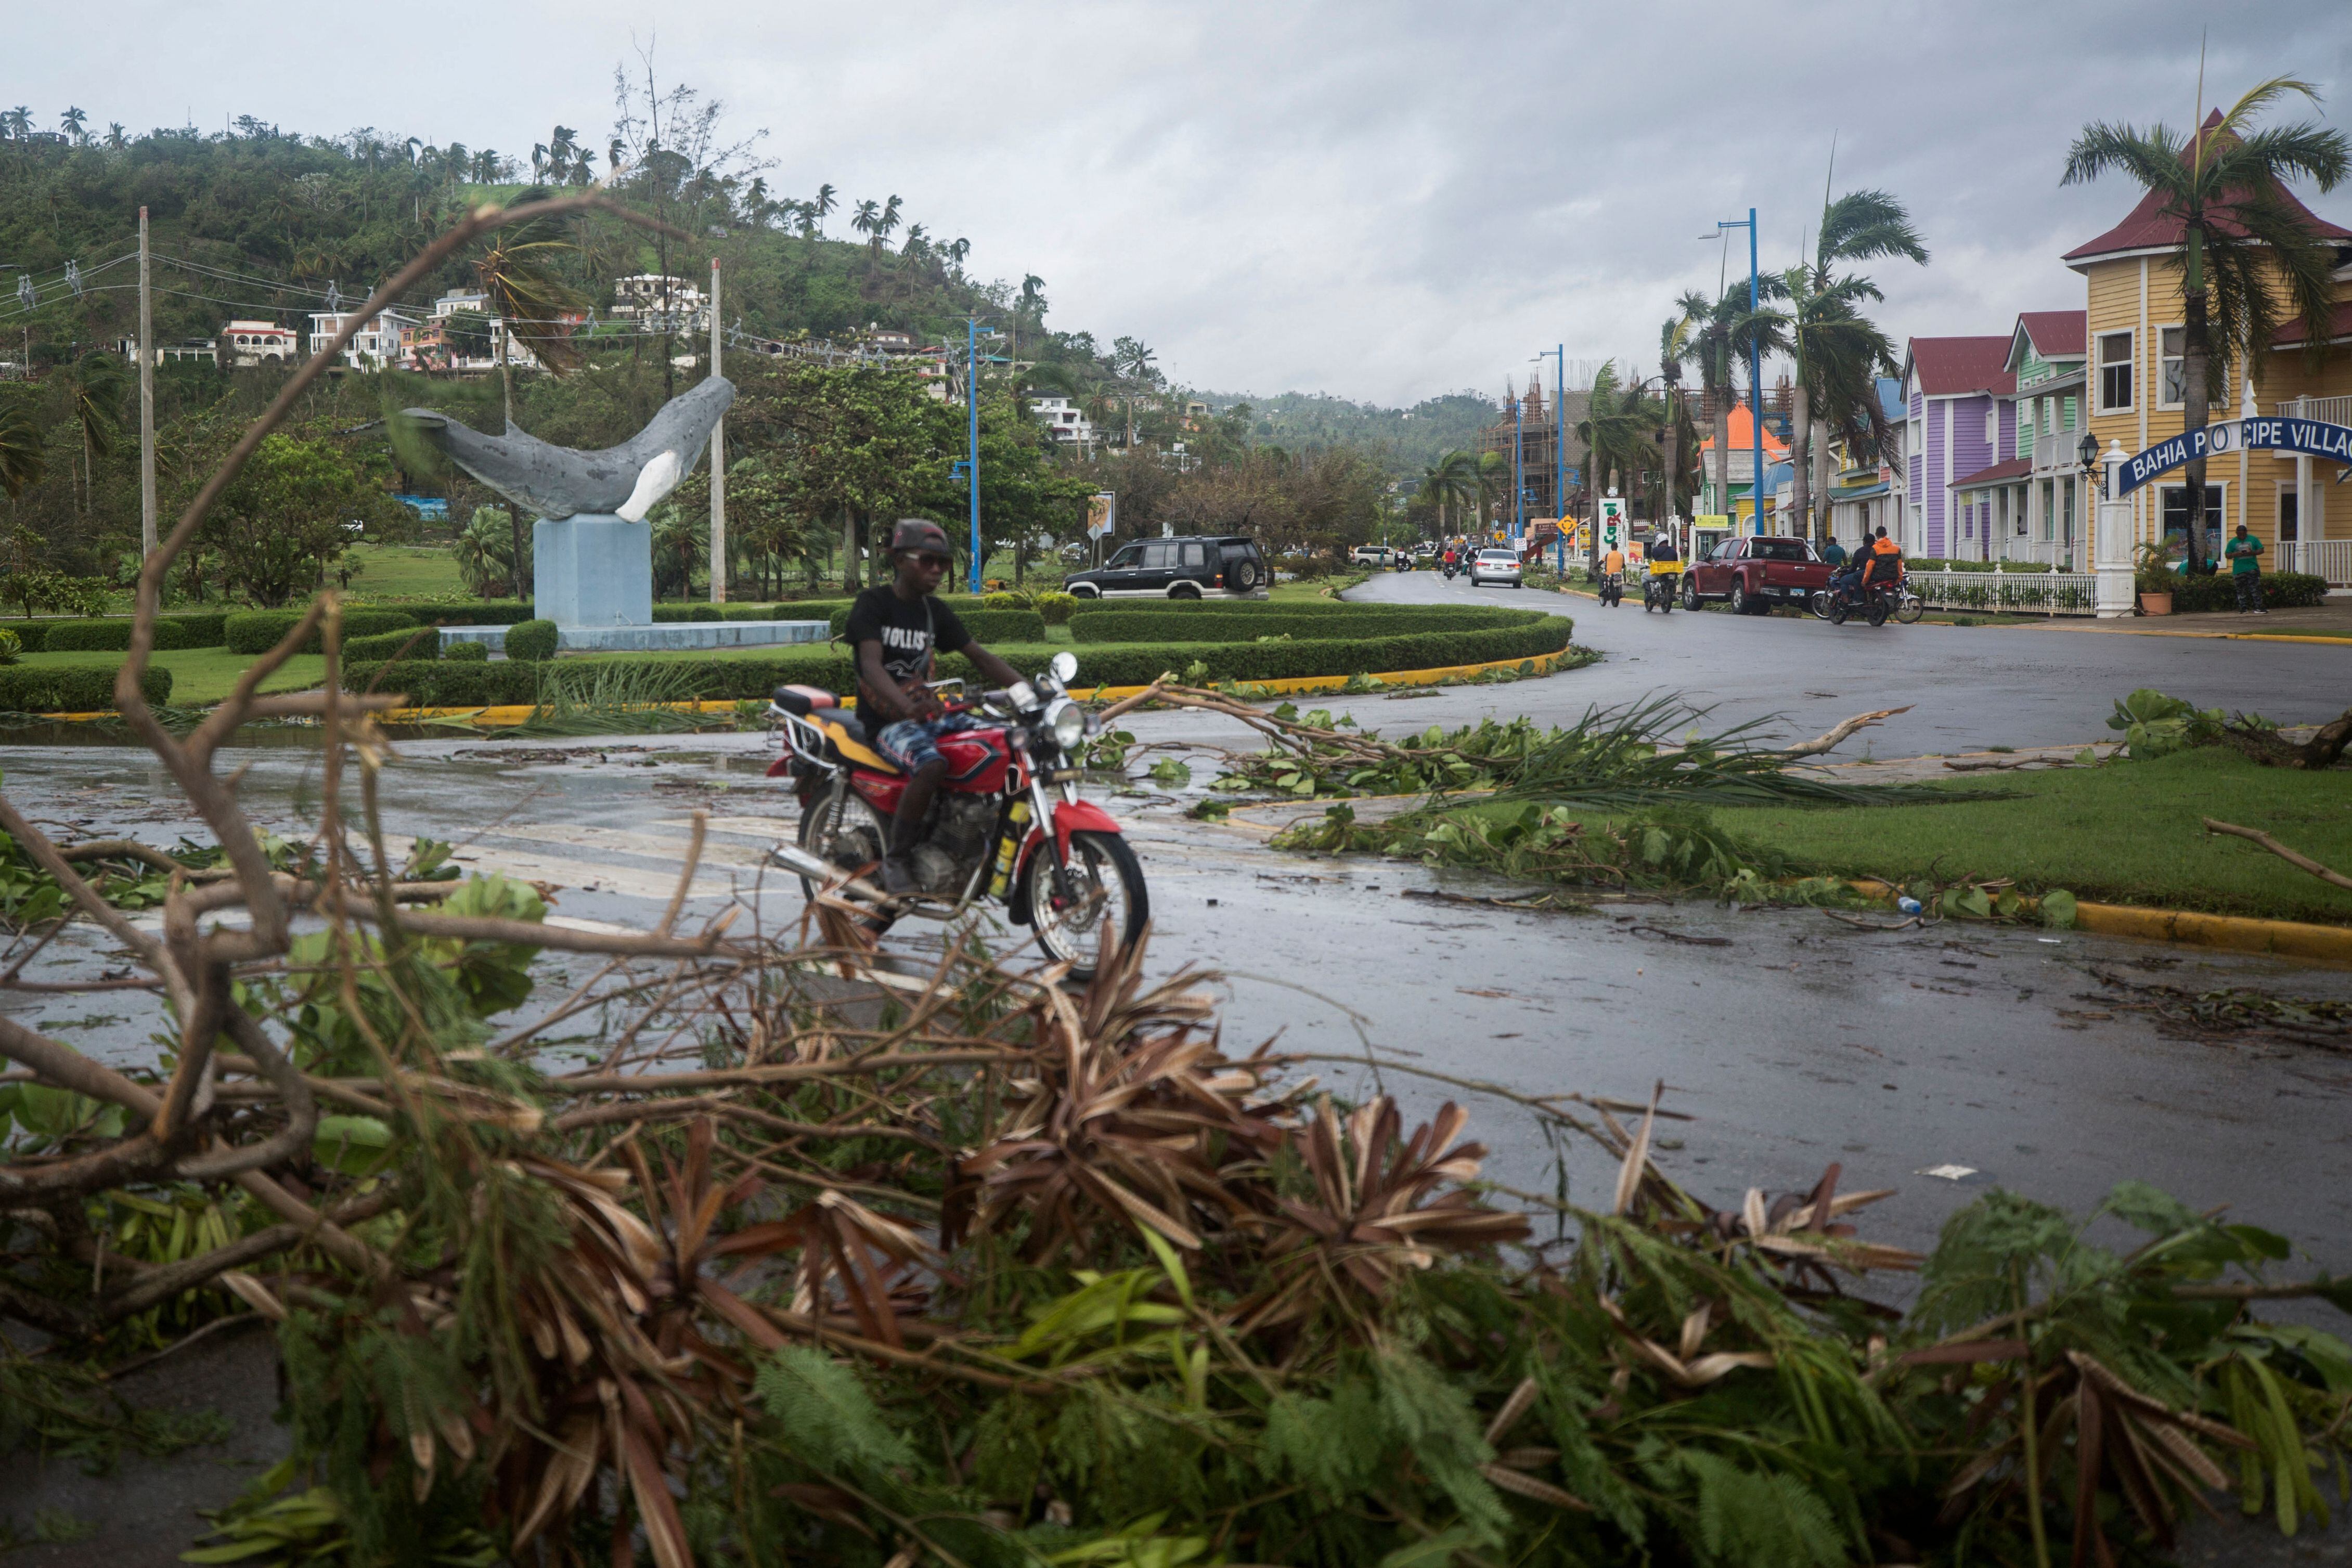 La temporada de huracanes en el Caribe tiene especial incidencia a finales de verano: agosto y septiembre